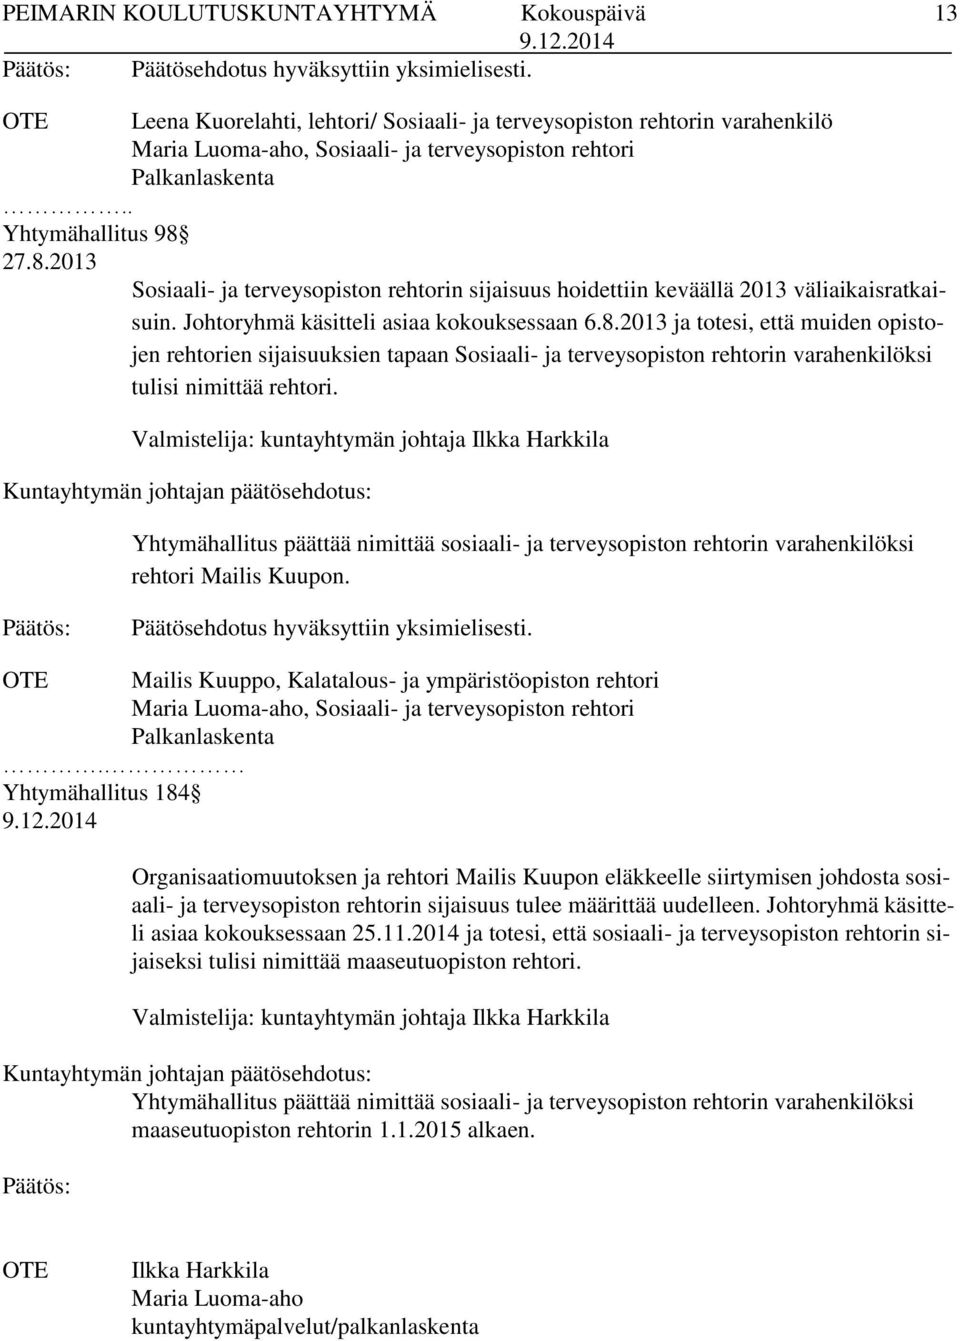 Valmistelija: kuntayhtymän johtaja Ilkka Harkkila Yhtymähallitus päättää nimittää sosiaali- ja terveysopiston rehtorin varahenkilöksi rehtori Mailis Kuupon. Päätösehdotus hyväksyttiin yksimielisesti.